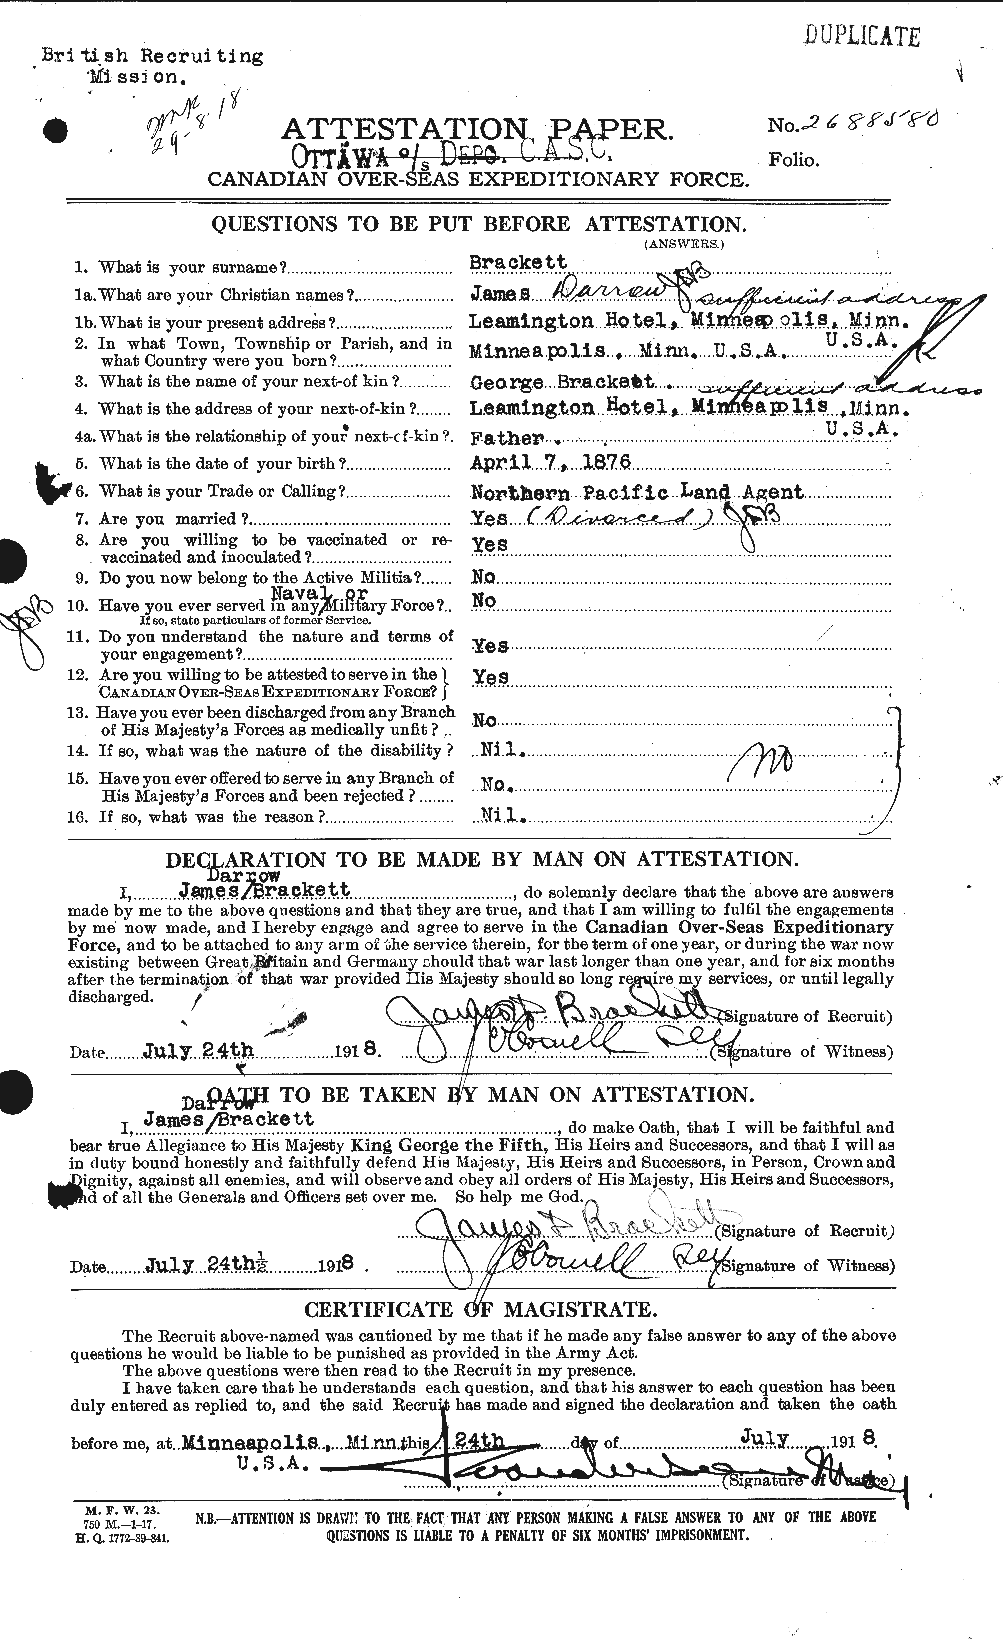 Dossiers du Personnel de la Première Guerre mondiale - CEC 254734a